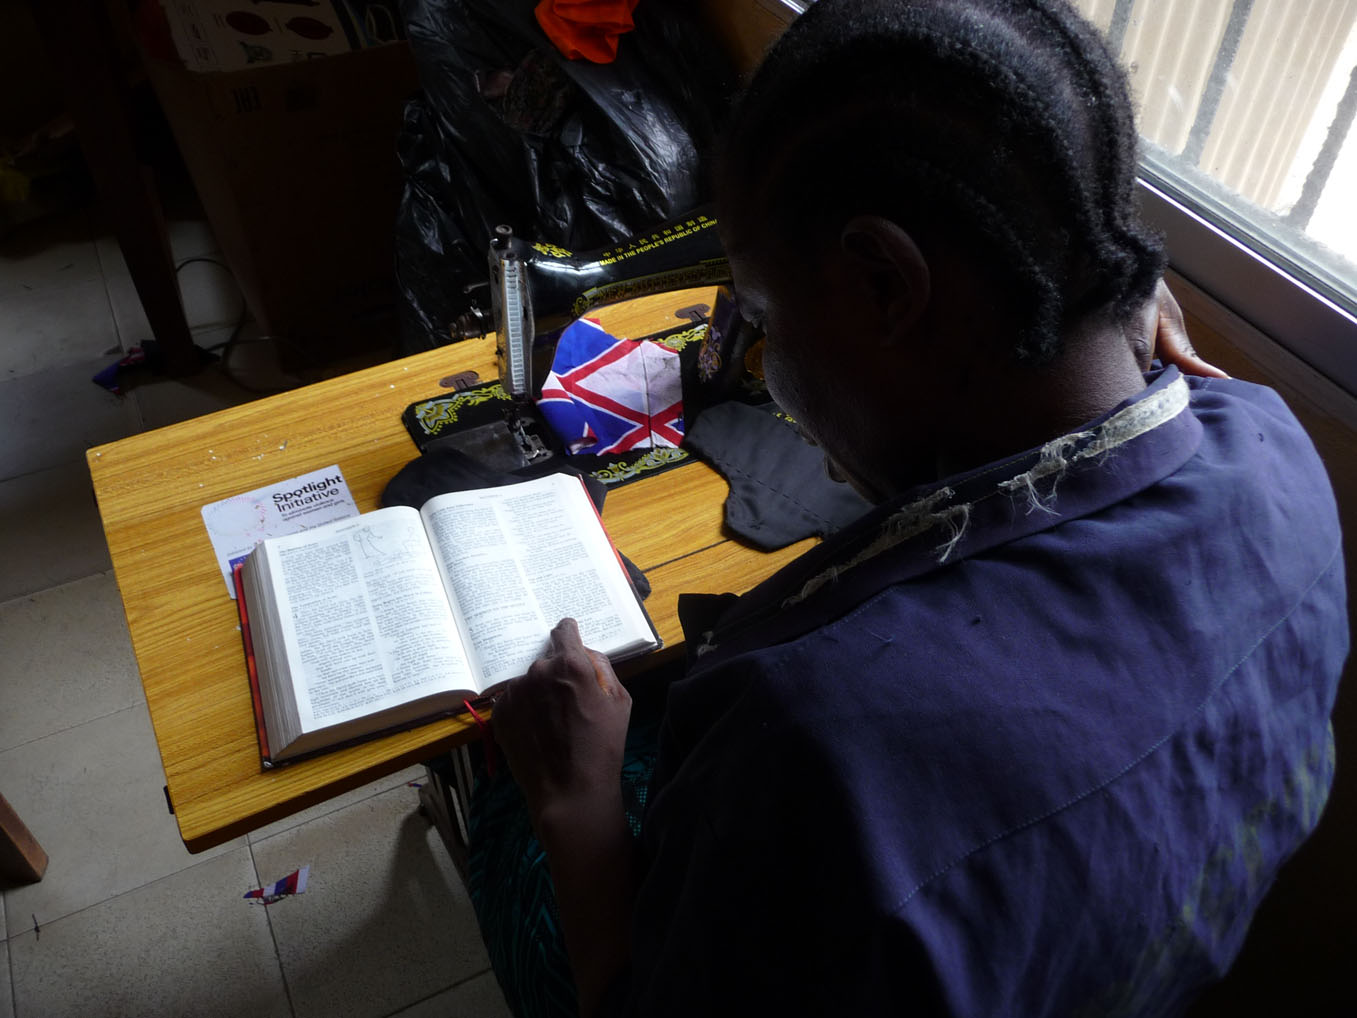 Garmai lee los Evangelios durante un descanso durante sus clases de costura.